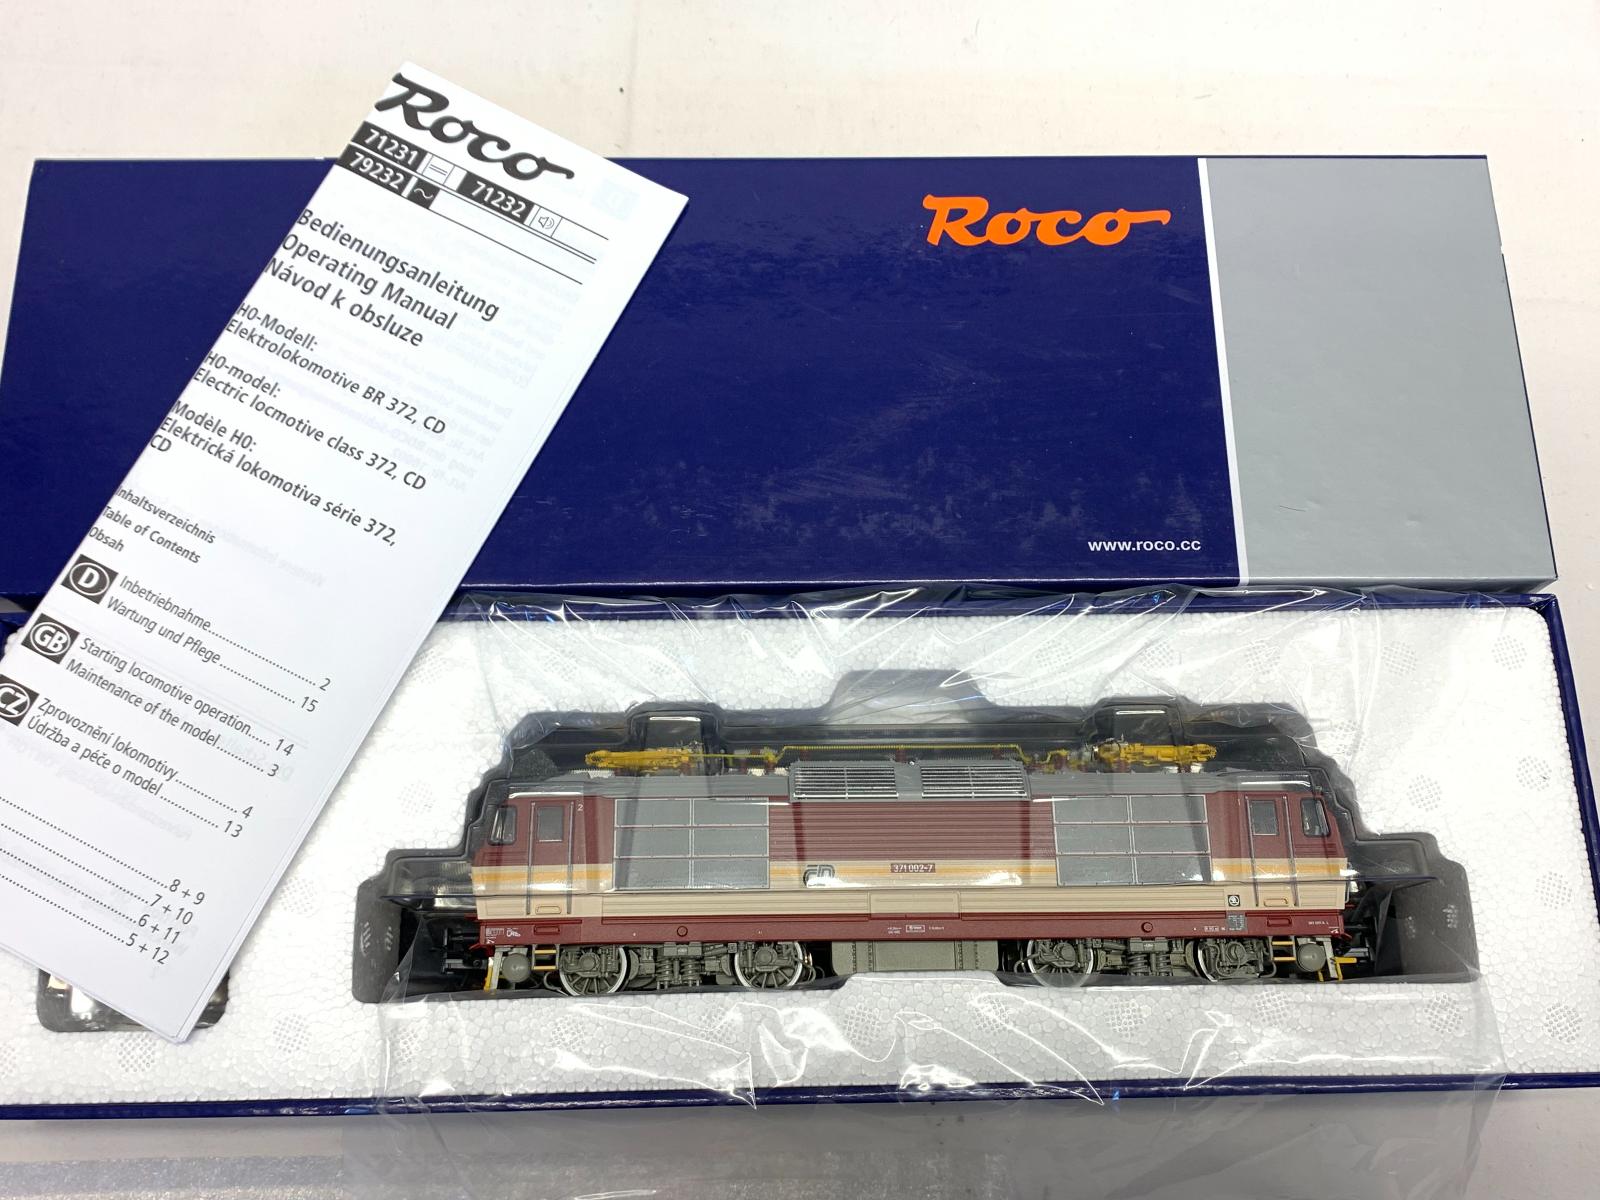 H0 71232 ROCO "Pepin" ČD 371 002-7, digi/SOUND16bit, ep. 5. - 360 € - Modelové železnice